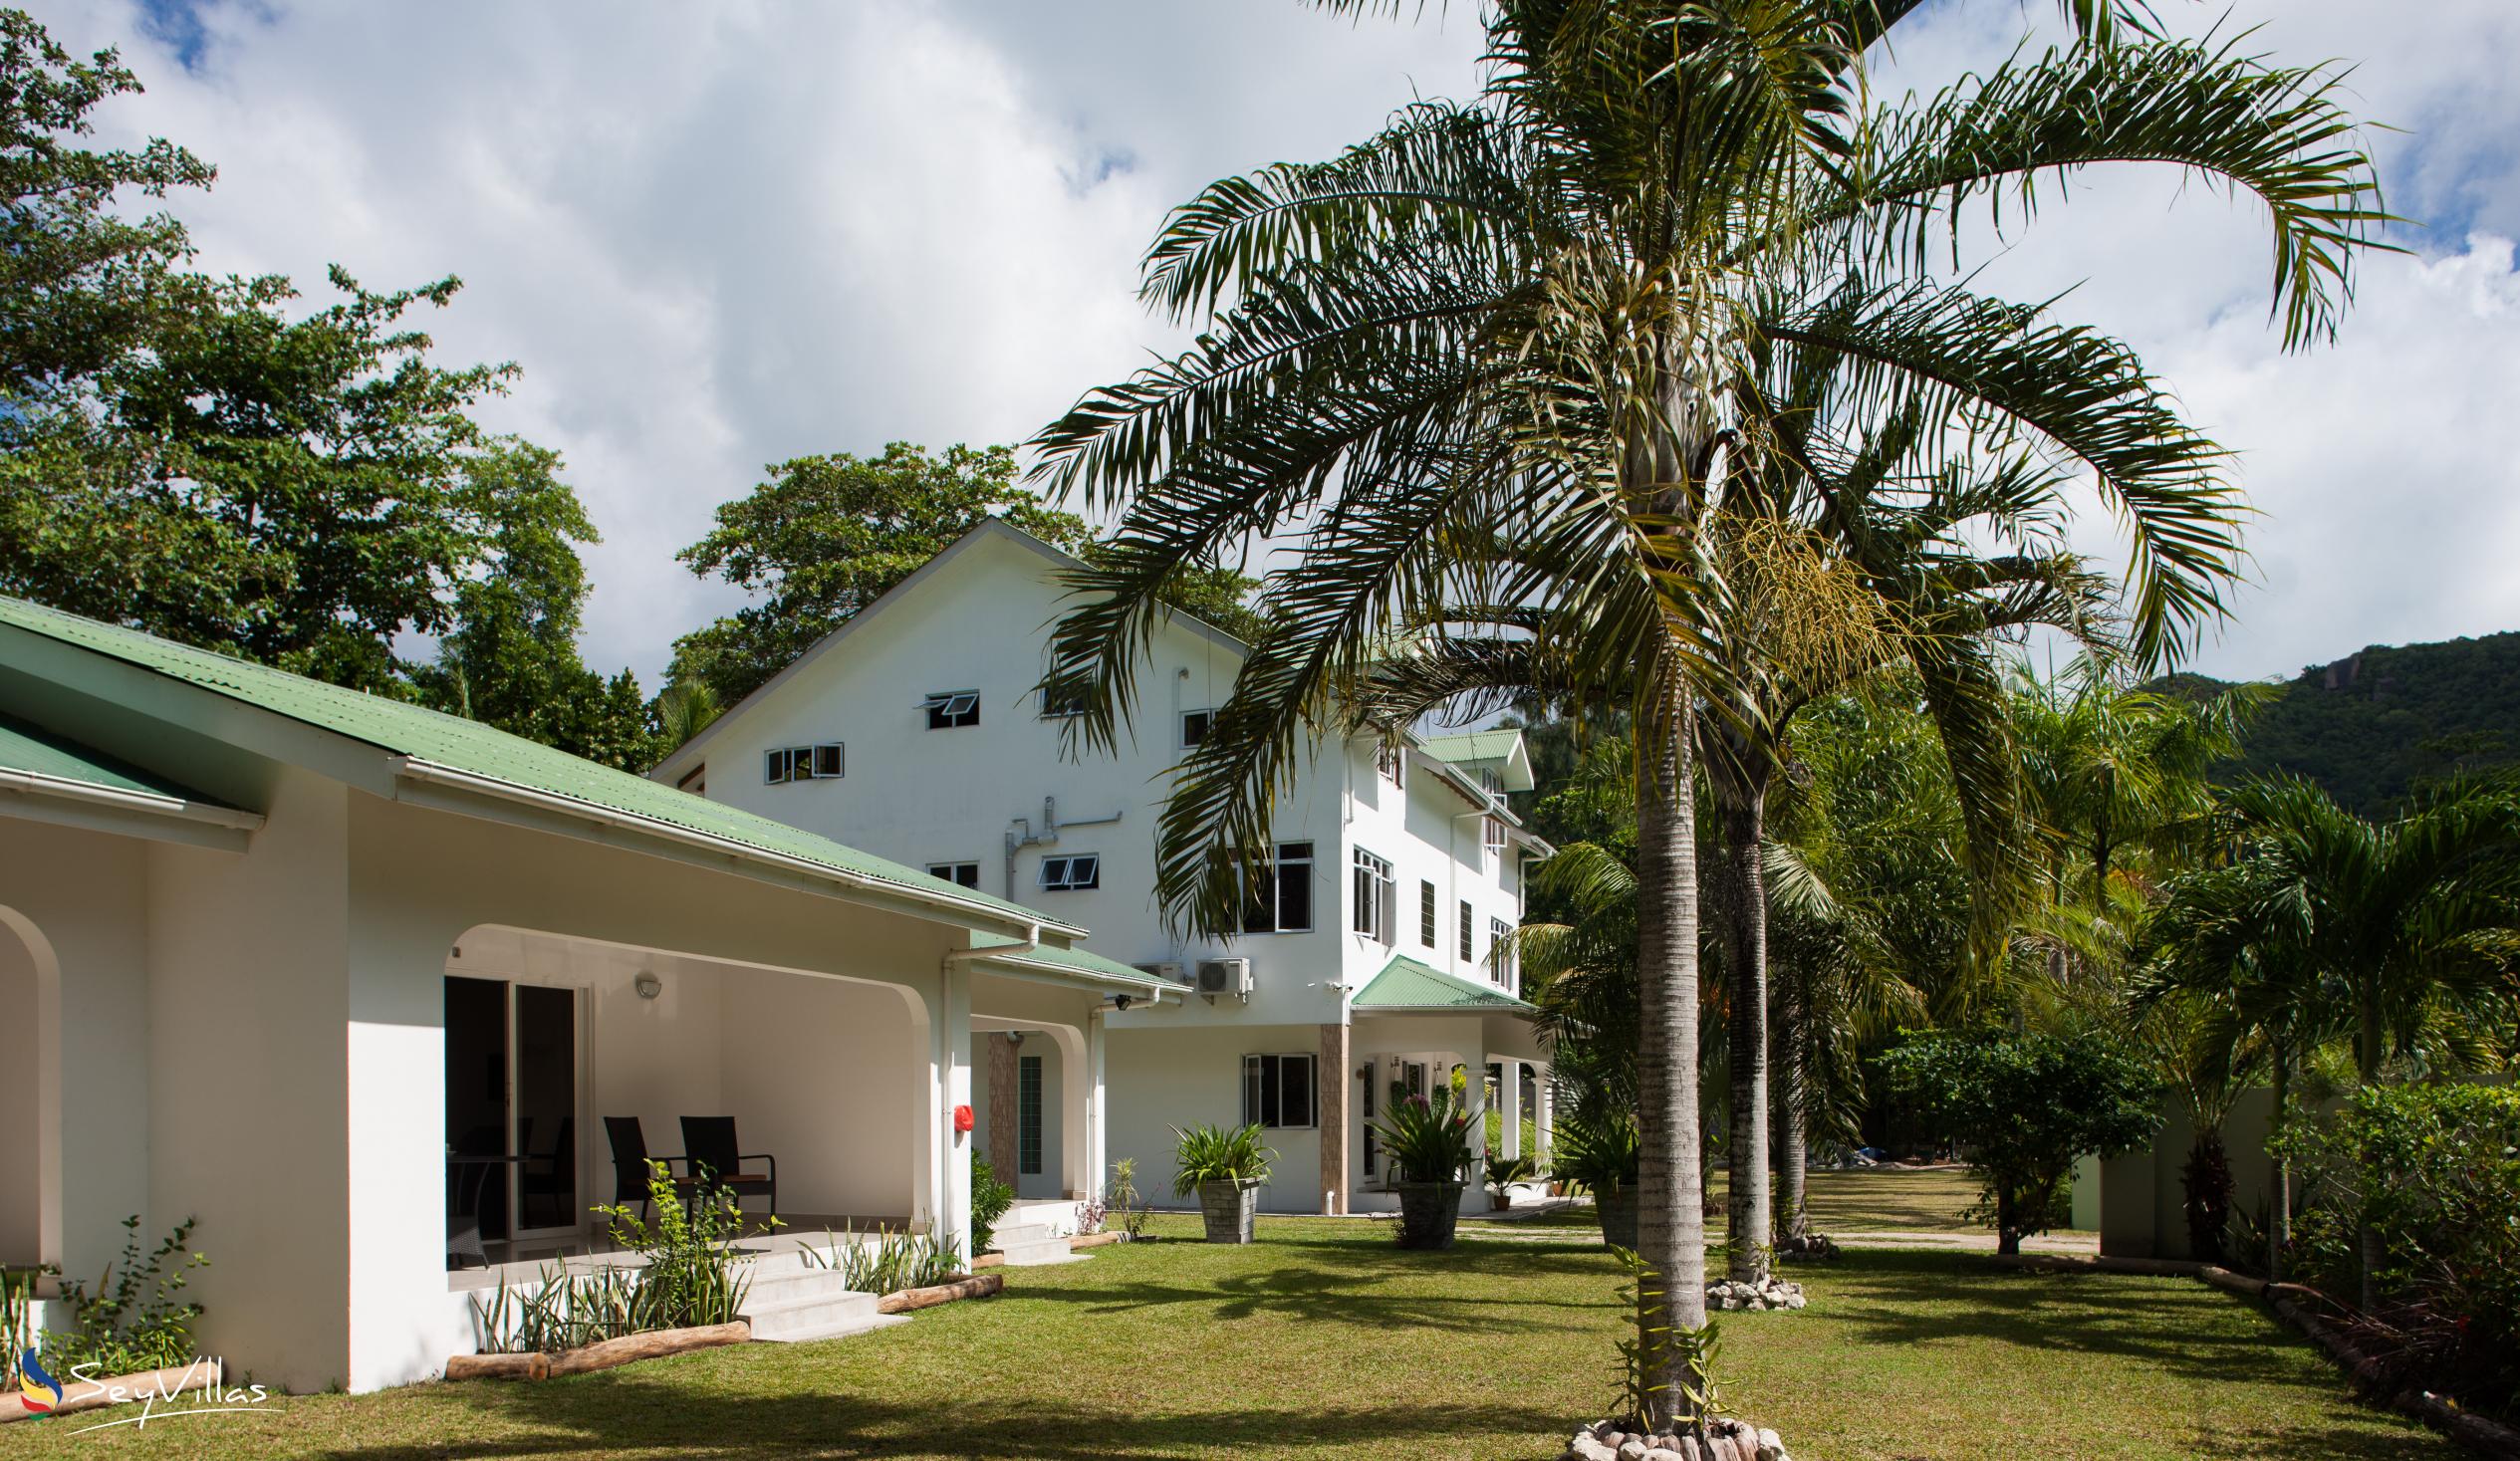 Foto 6: La Modestie Villa - Aussenbereich - Praslin (Seychellen)